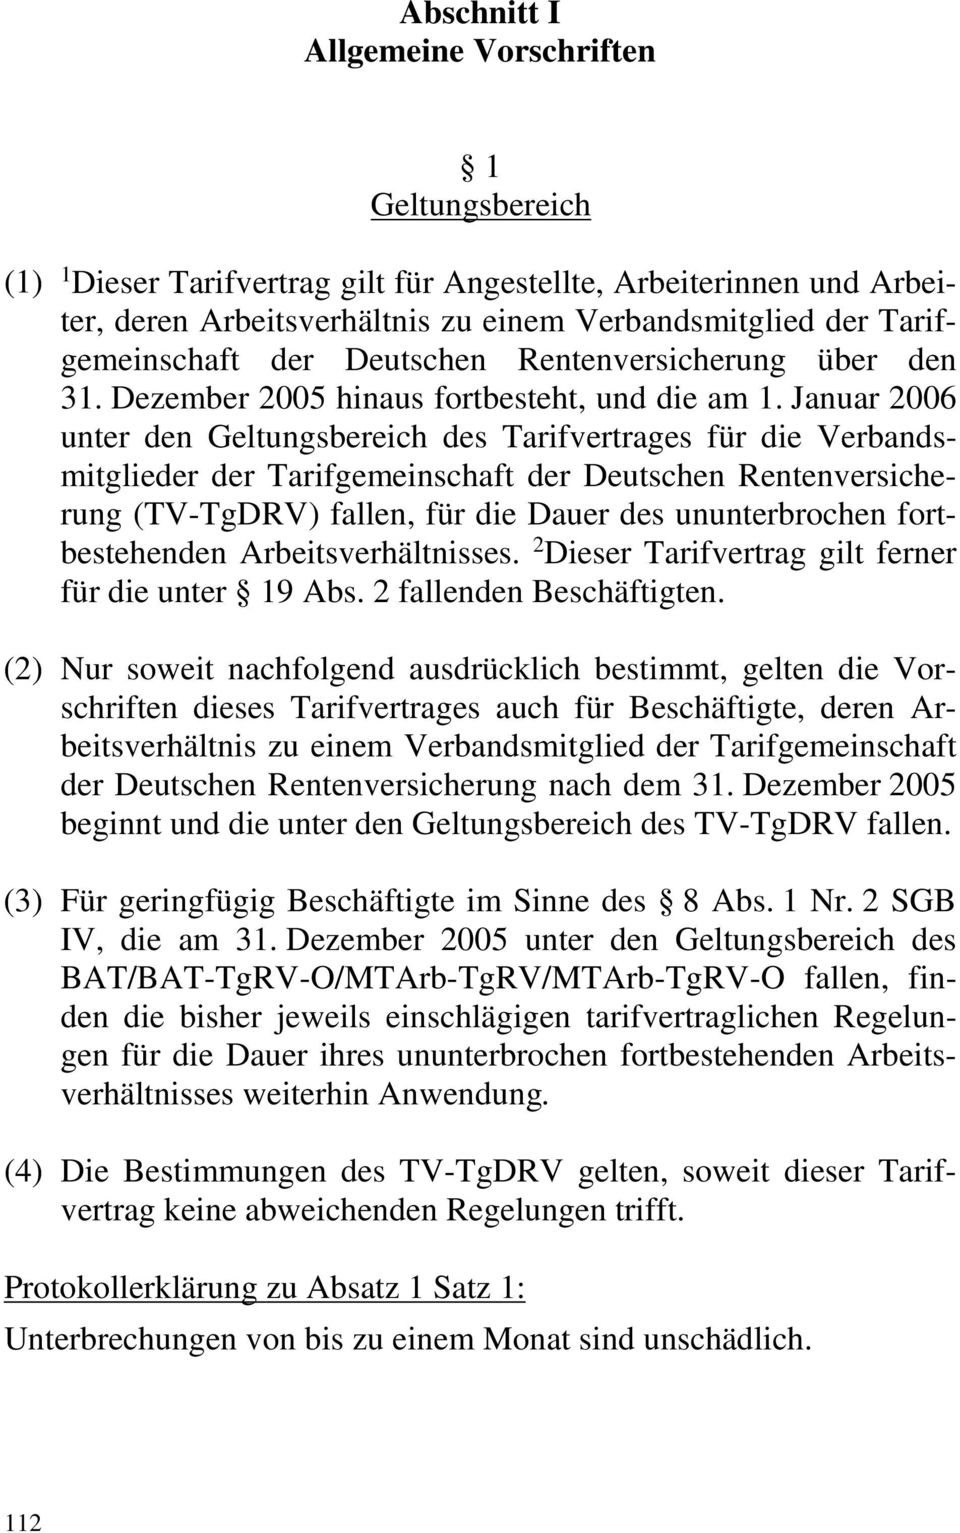 Januar 2006 unter den Geltungsbereich des Tarifvertrages für die Verbandsmitglieder der Tarifgemeinschaft der Deutschen Rentenversicherung (TV-TgDRV) fallen, für die Dauer des ununterbrochen